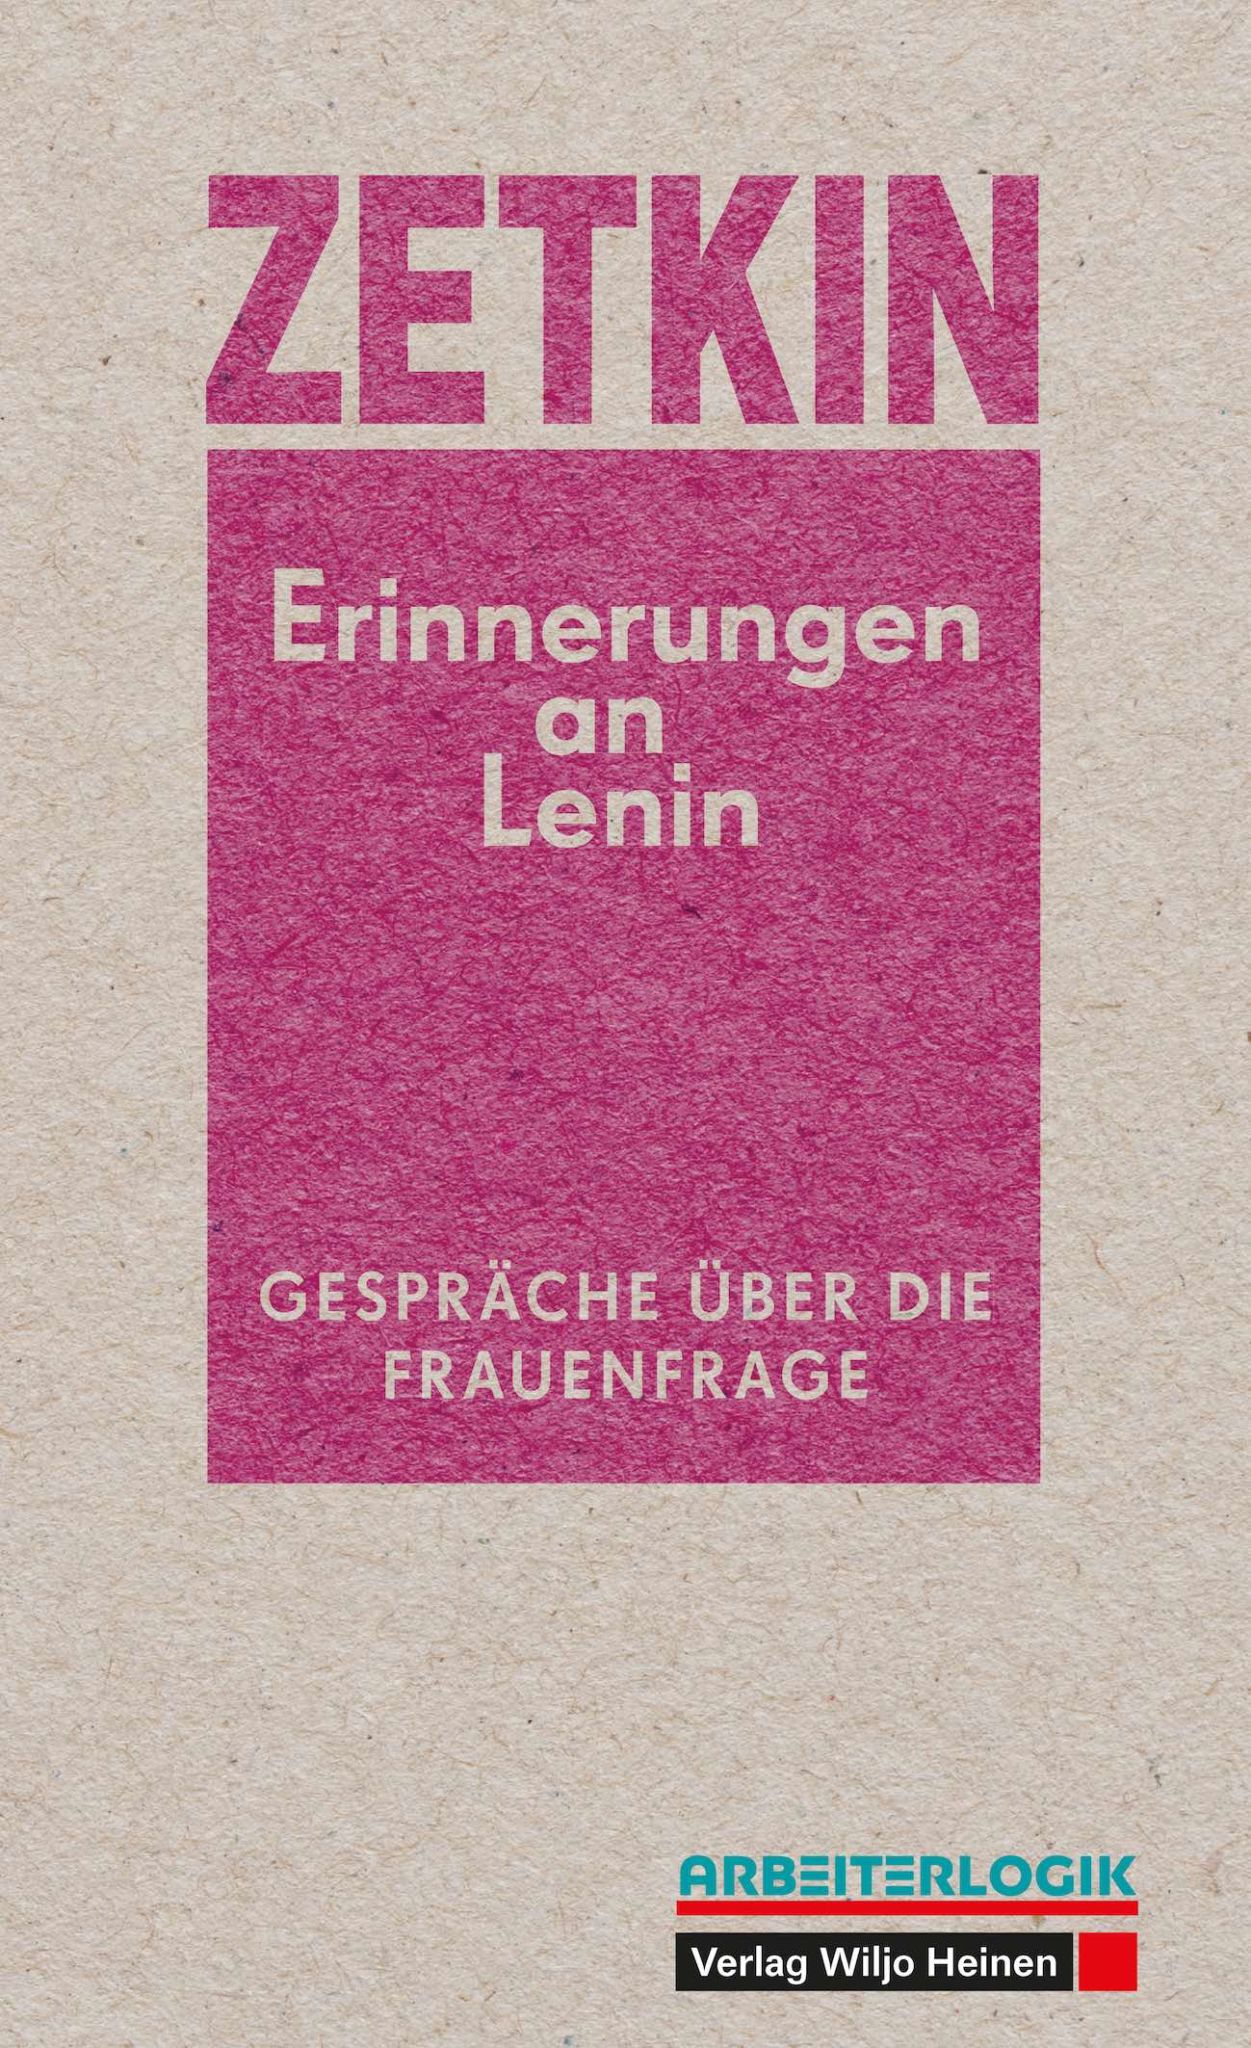 Clara Zetkin: »Erinnerungen an Lenin«